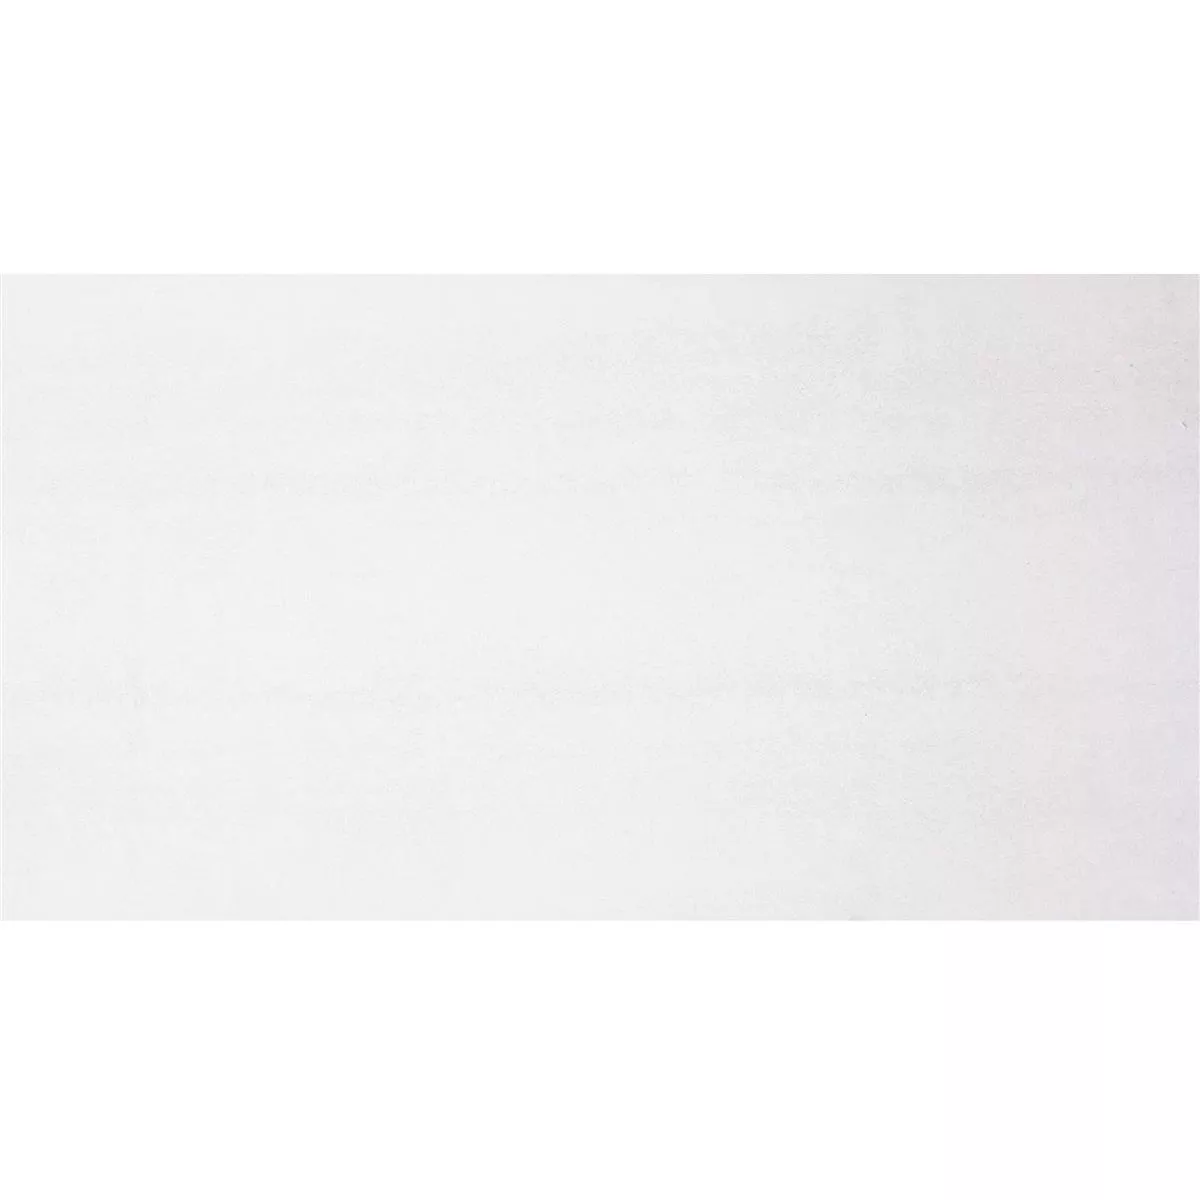 Seinä Tiilet Merida Valkoinen Kattokruunu Korjattu 30x60cm